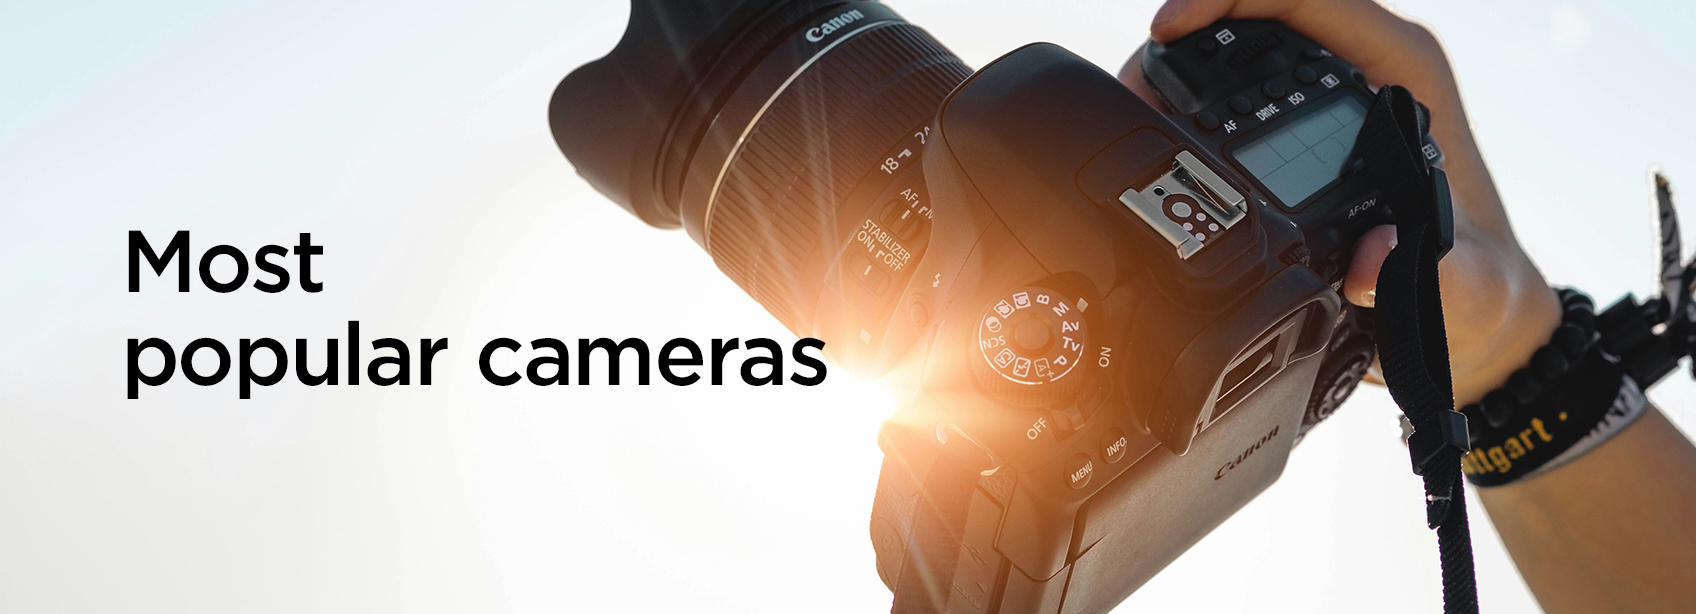 Popular-Cameras-H-130524.jpg